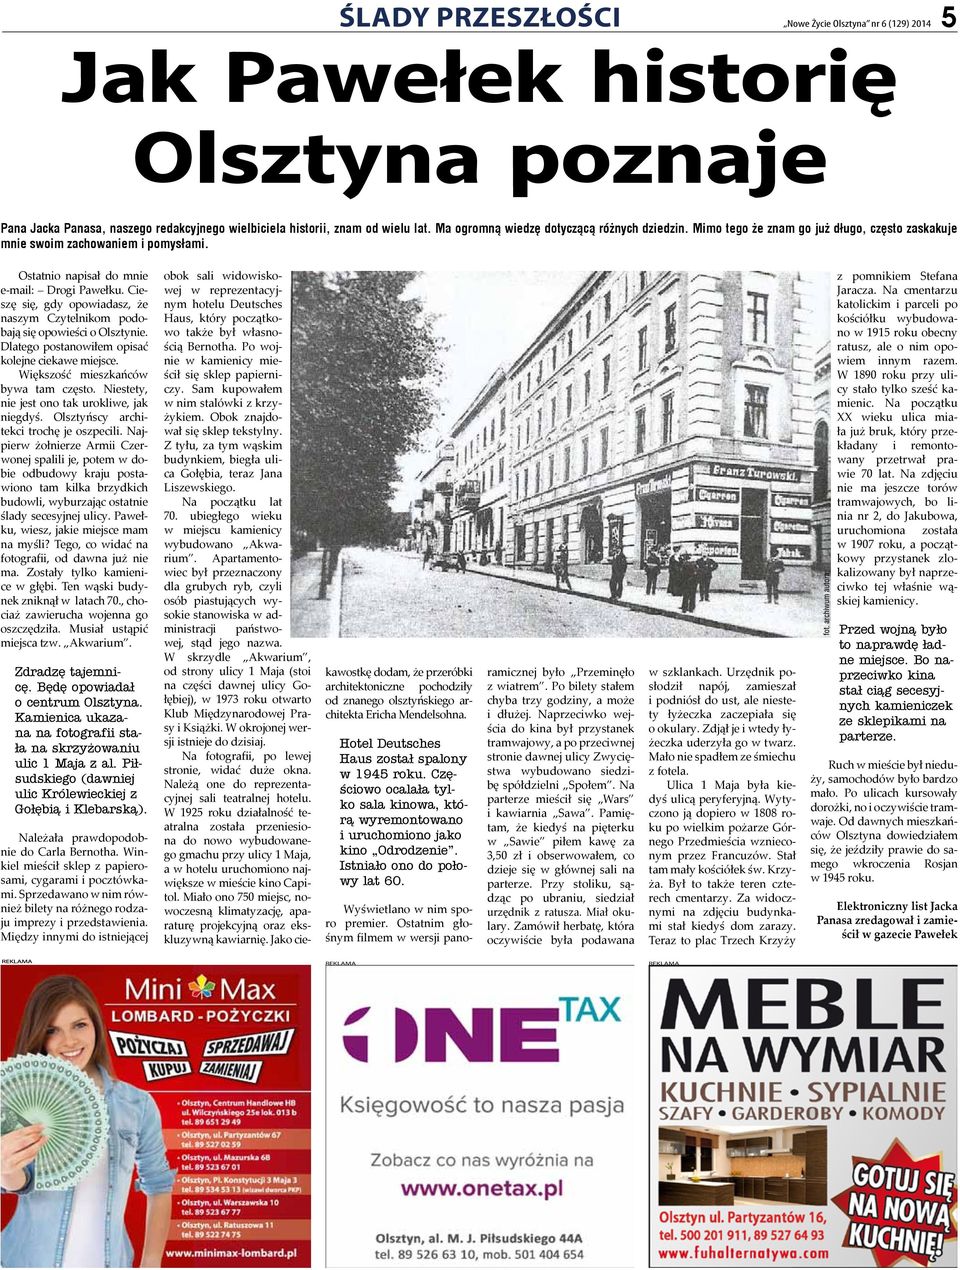 Cieszę się, gdy opowiadasz, że naszym Czytelnikom podobają się opowieści o Olsztynie. Dlatego postanowiłem opisać kolejne ciekawe miejsce. Większość mieszkańców bywa tam często.